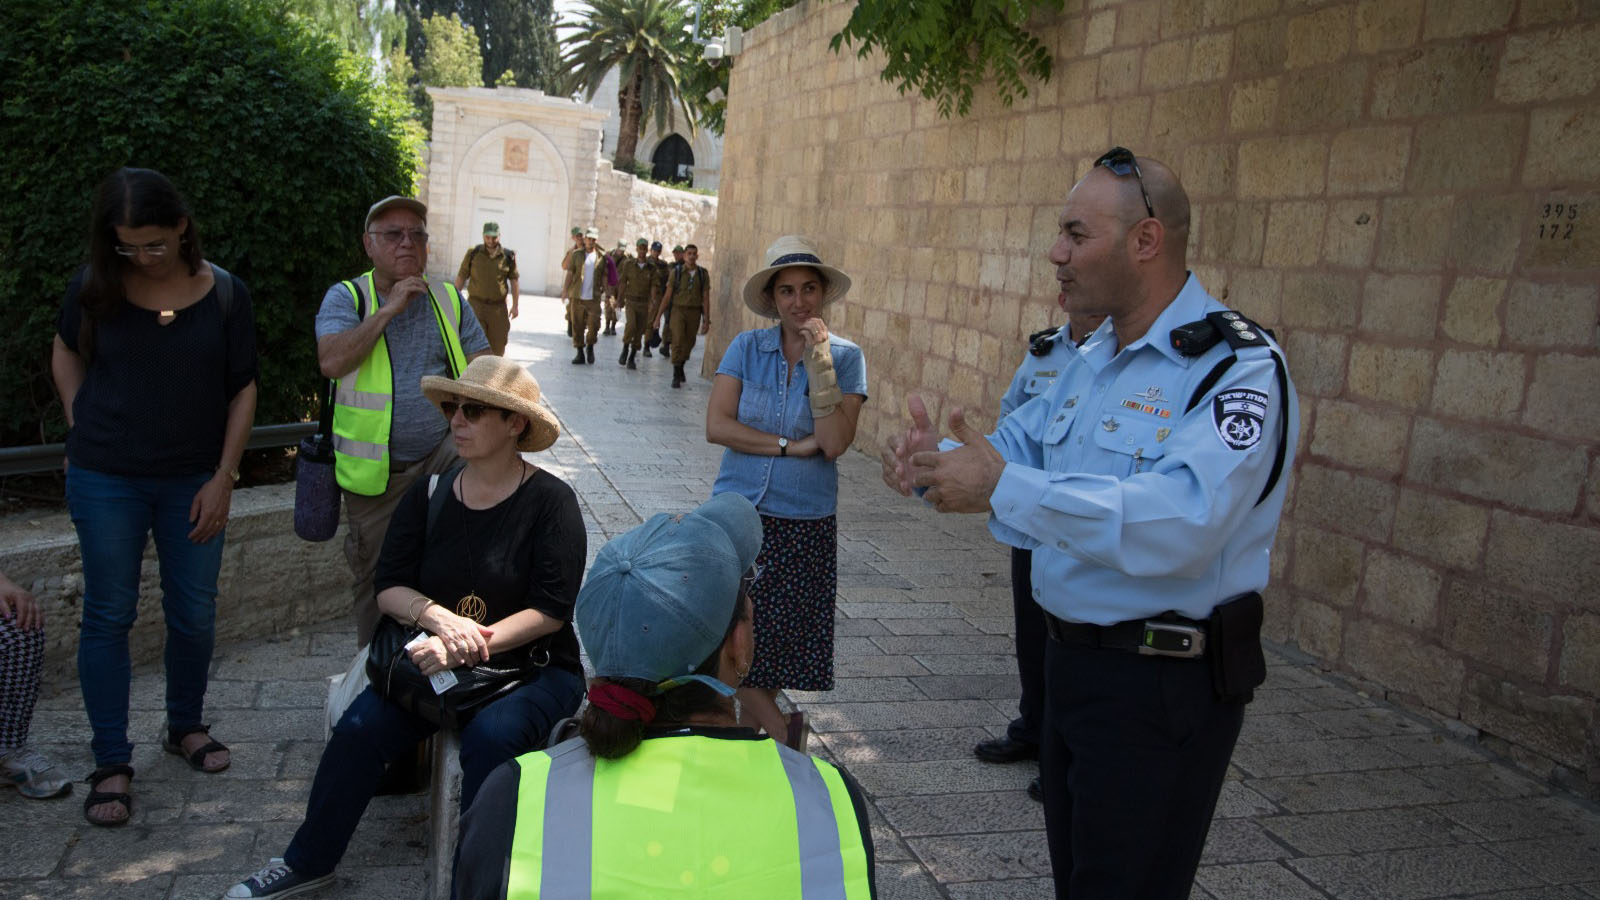 أنشطة مركز الحوار بين الثقافات في القدس كجزء من برنامج نافذة جبل صهيون. (الصورة: مركز الحوار بين الثقافات في القدس)